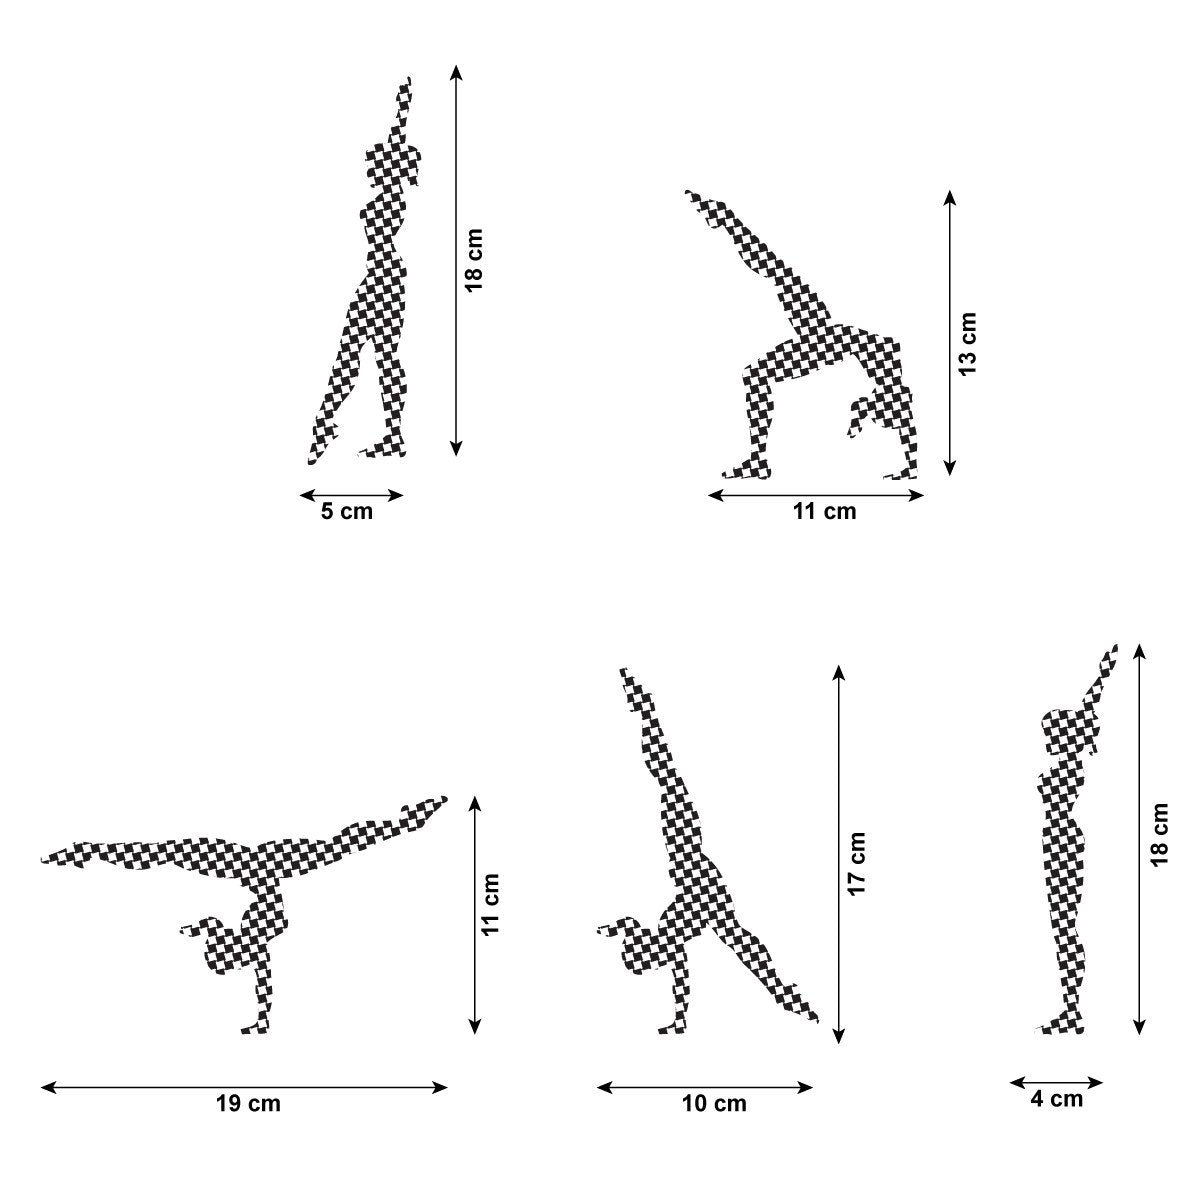 CraftStar Walkover Gymnast Stencil Set - Size Guide